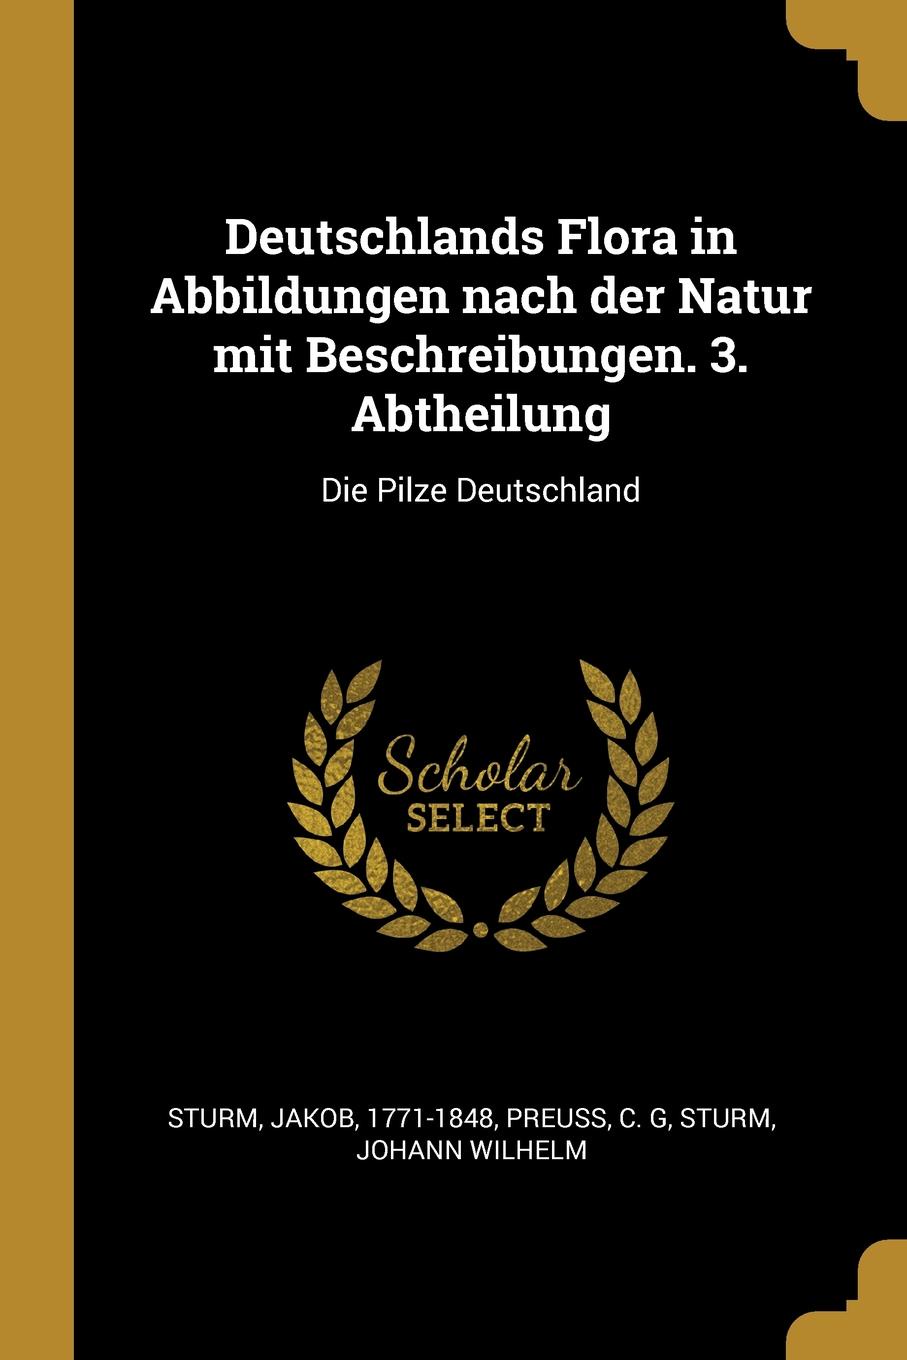 Deutschlands Flora in Abbildungen nach der Natur mit Beschreibungen. 3. Abtheilung. Die Pilze Deutschland